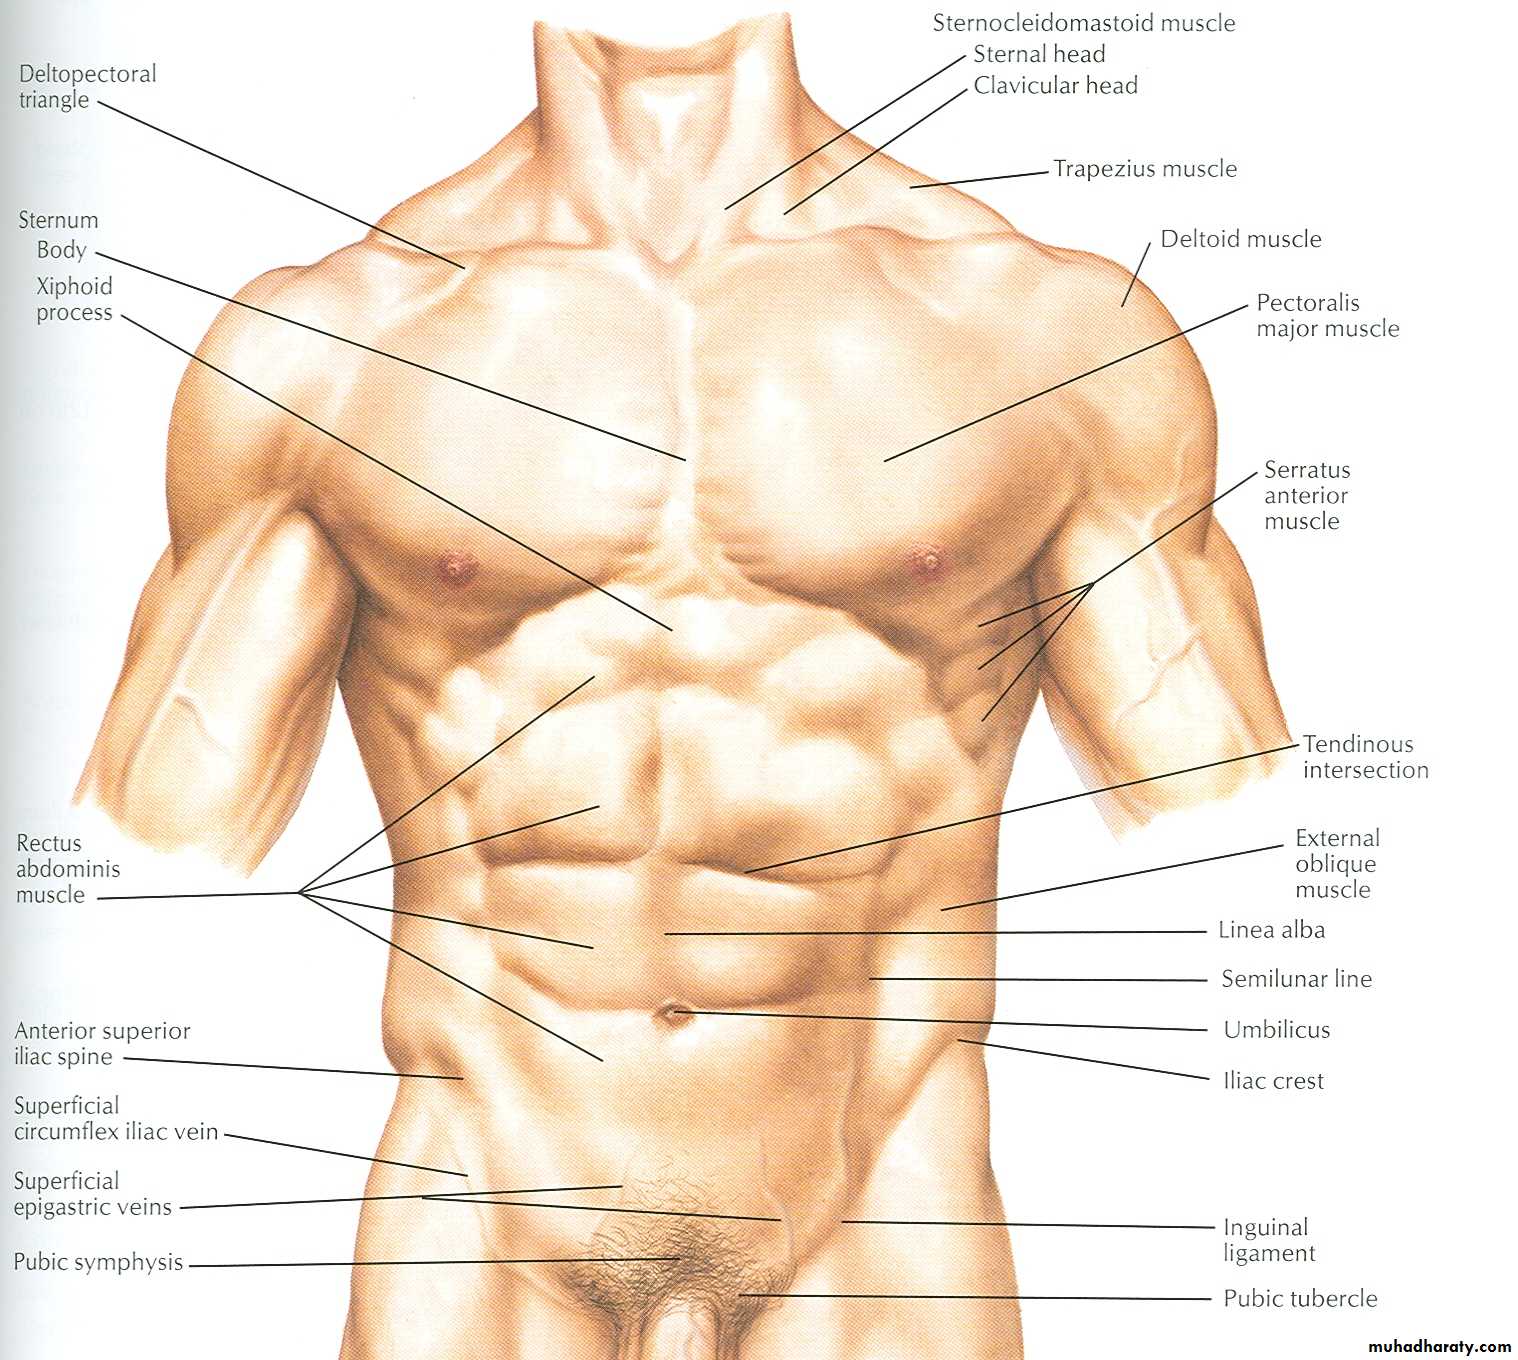 Какая часть тела увеличивается. Мышцы торса анатомия. Торс мужчины анатомия. Анатомия мышц торса мужчины. Строение мужского лобка.